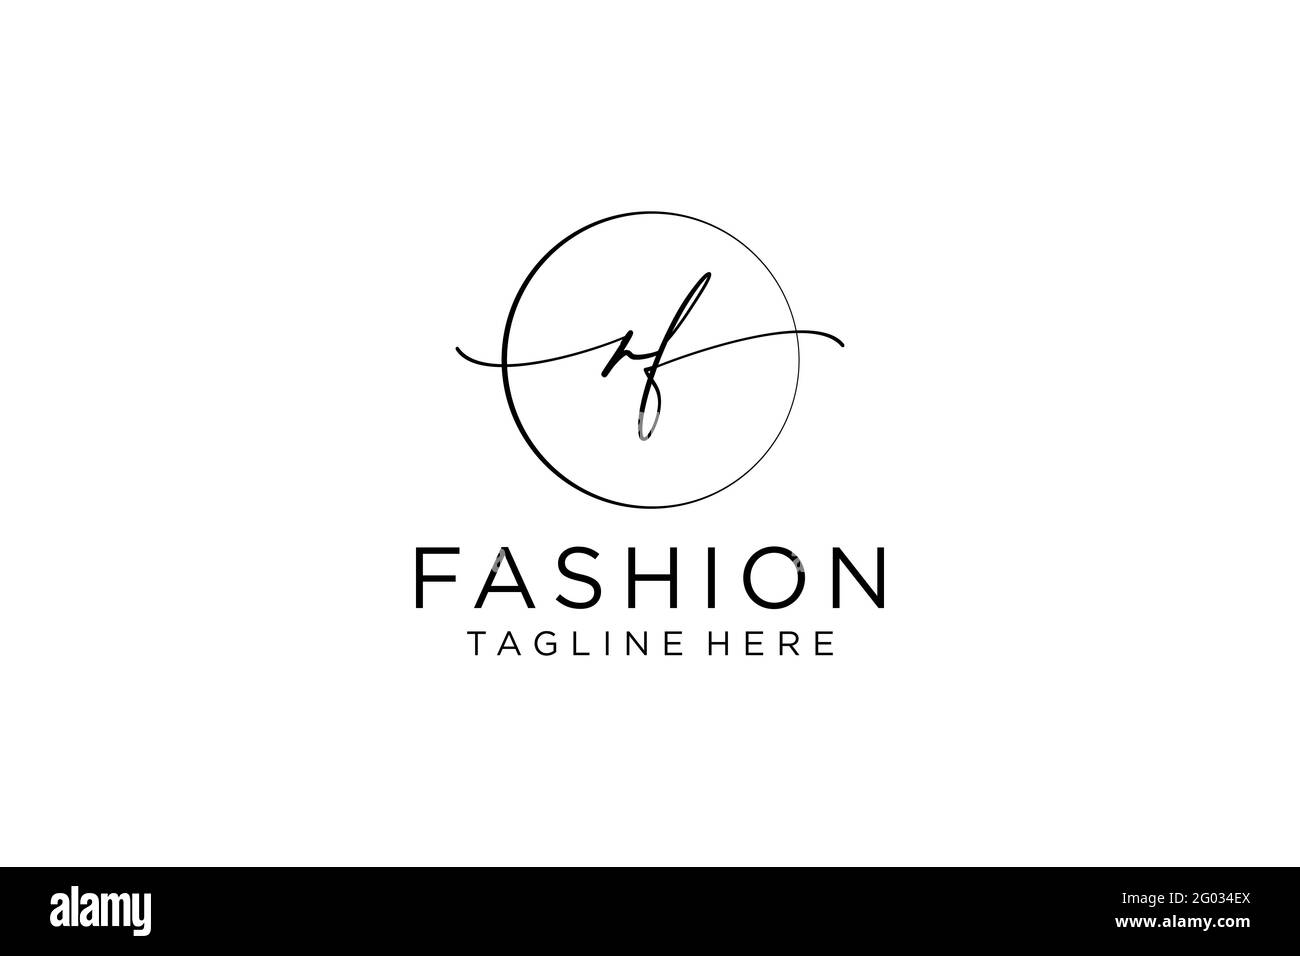 RF Monogramma di bellezza con logo femminile e design elegante con logo, logo scritto a mano della firma iniziale, matrimonio, moda, floreale e botanico con creatività Illustrazione Vettoriale